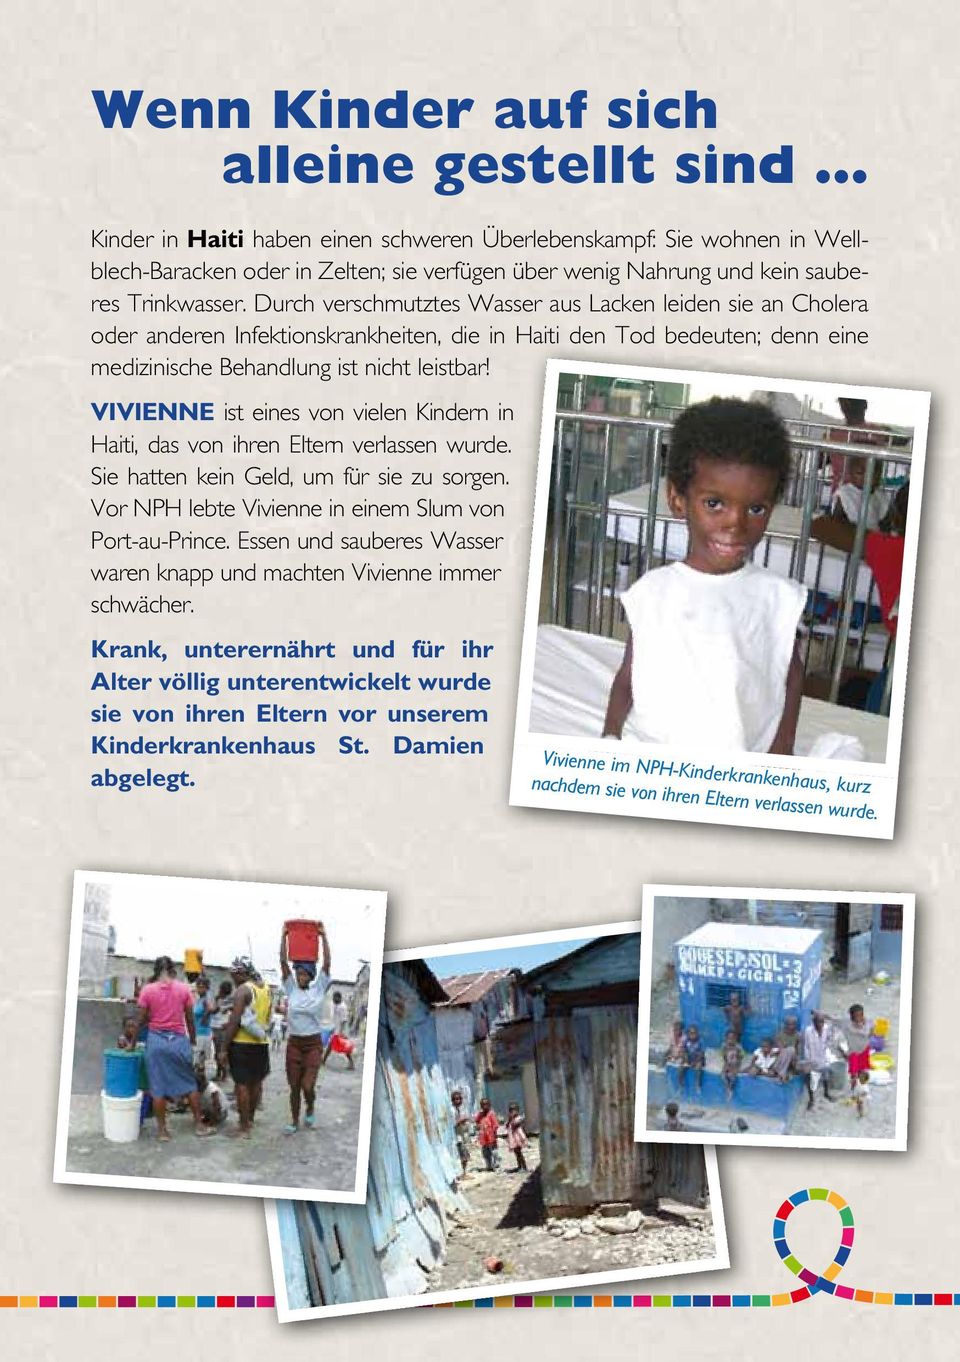 Vivienne ist eines von vielen Kindern in Haiti, das von ihren Eltern verlassen wurde. Sie hatten kein Geld, um für sie zu sorgen. Vor NPH lebte Vivienne in einem Slum von Port-au-Prince.